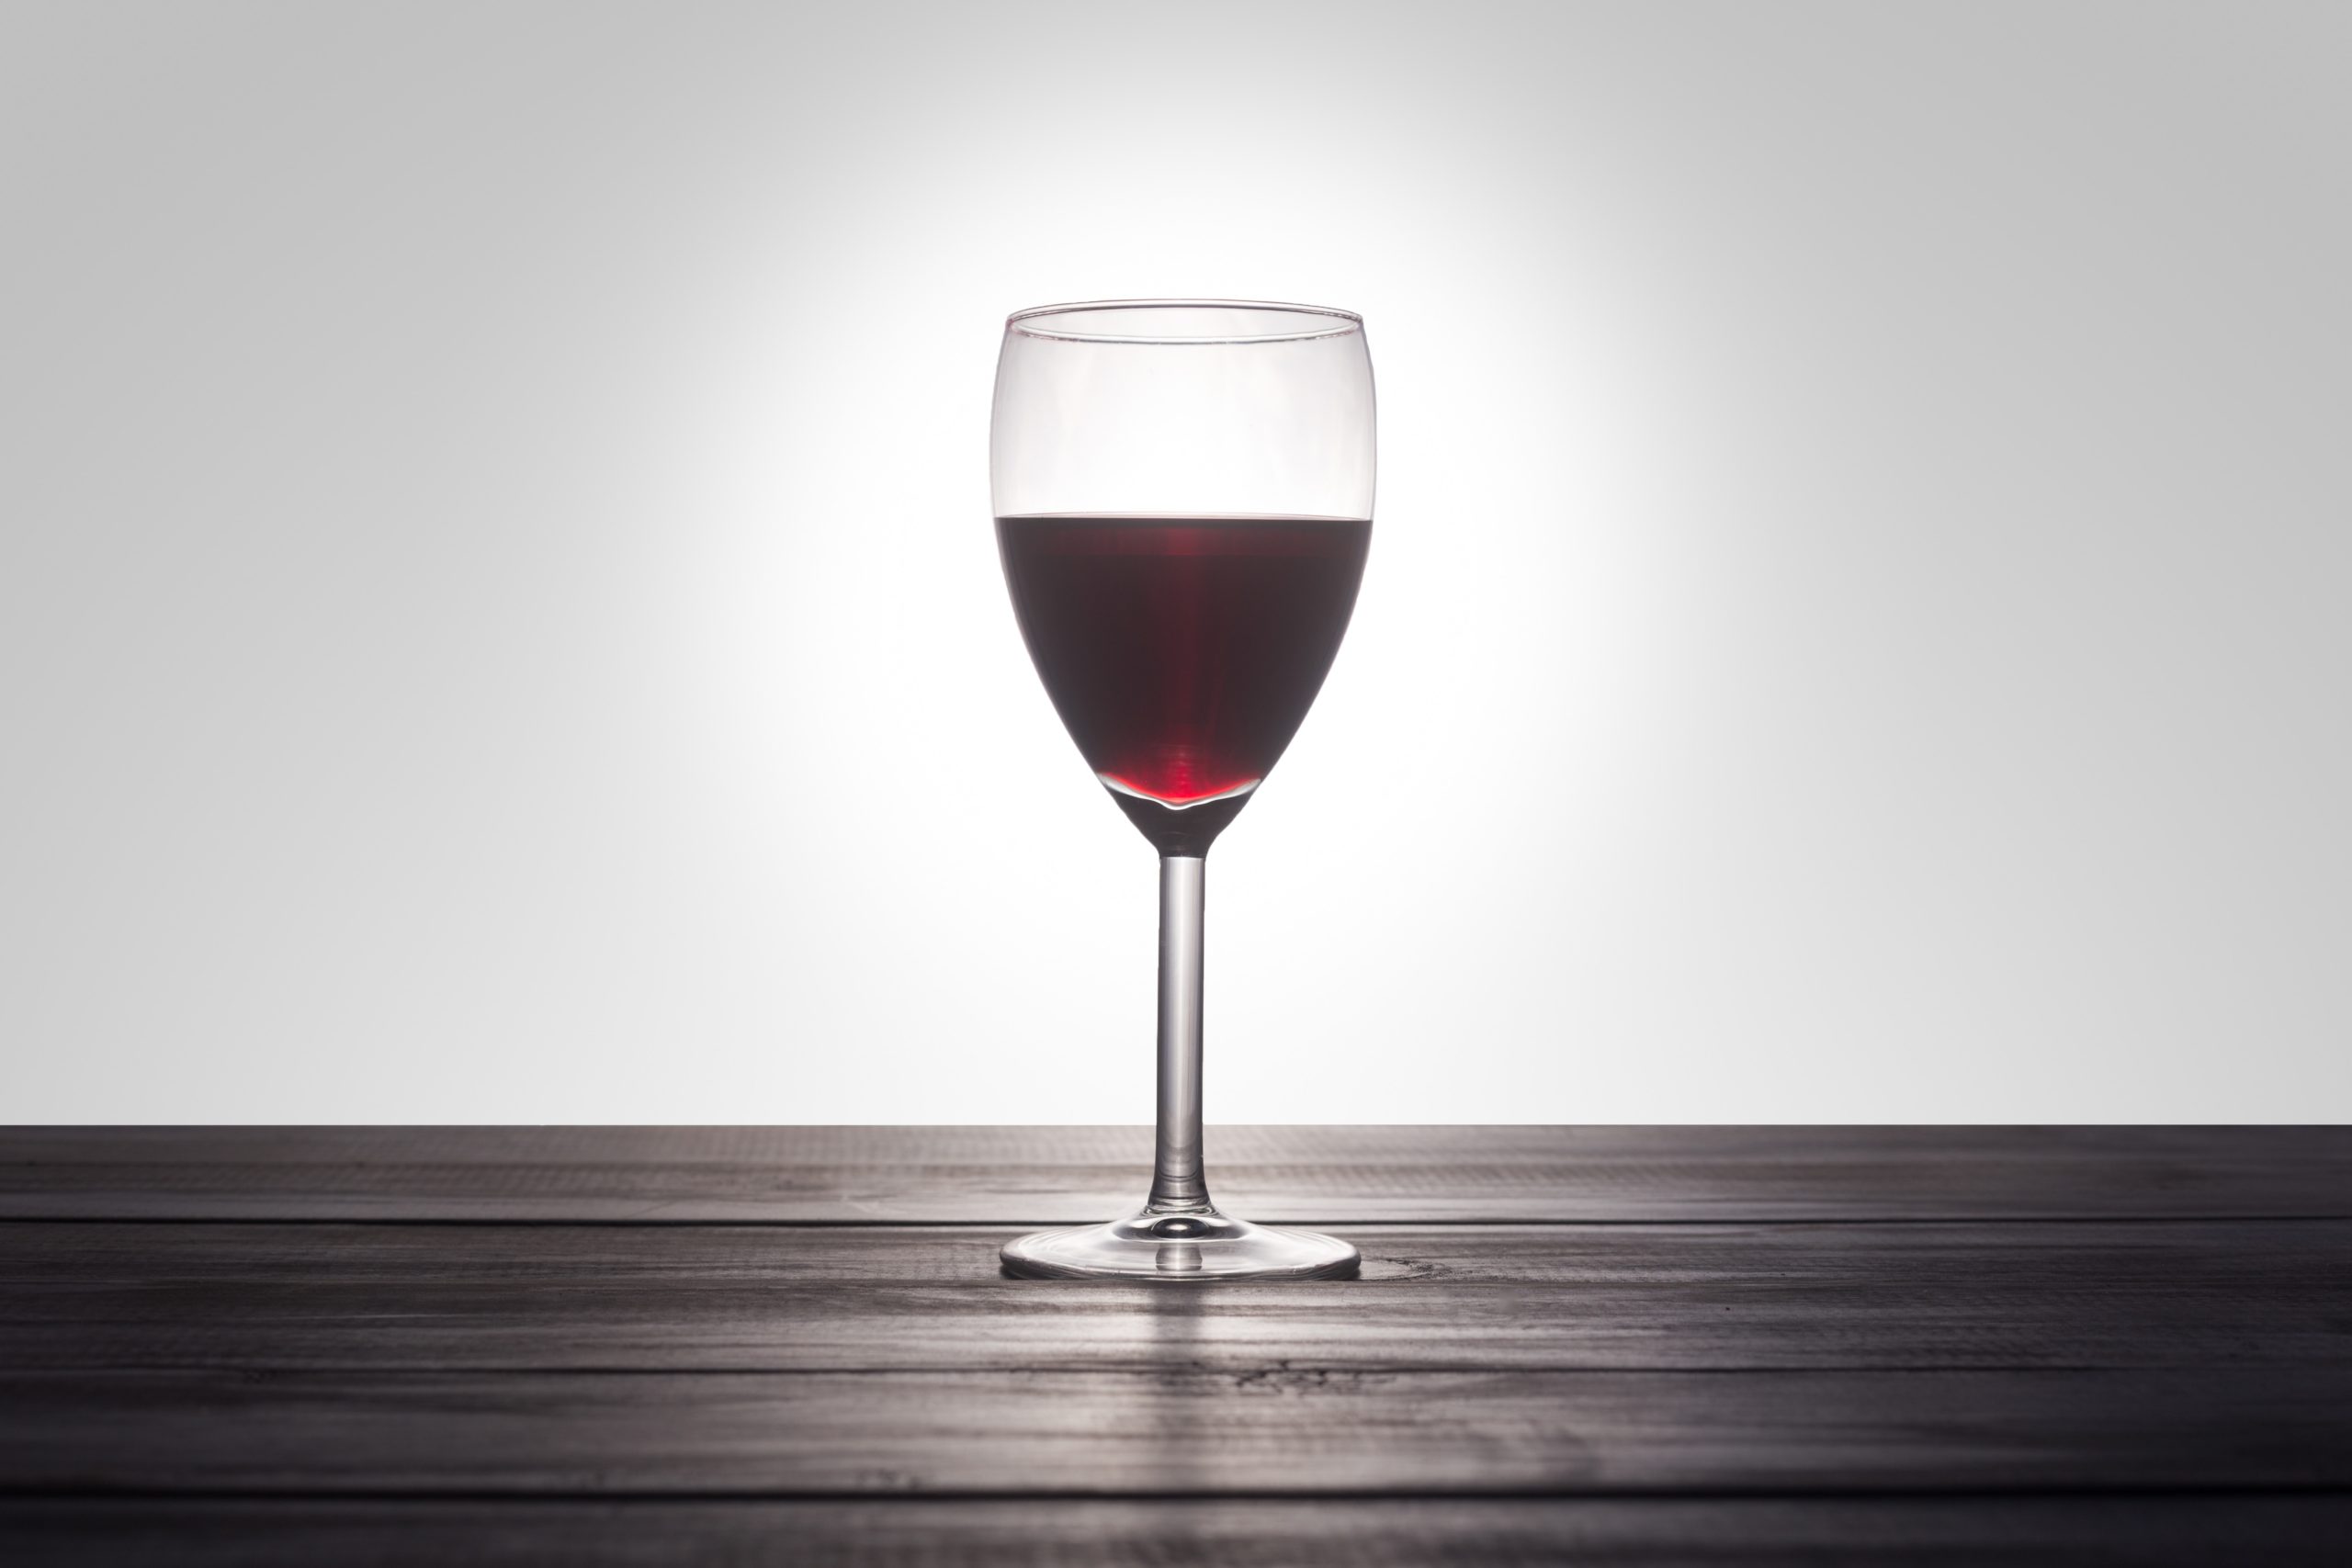 Kvalitets vin til julekurven - find den online